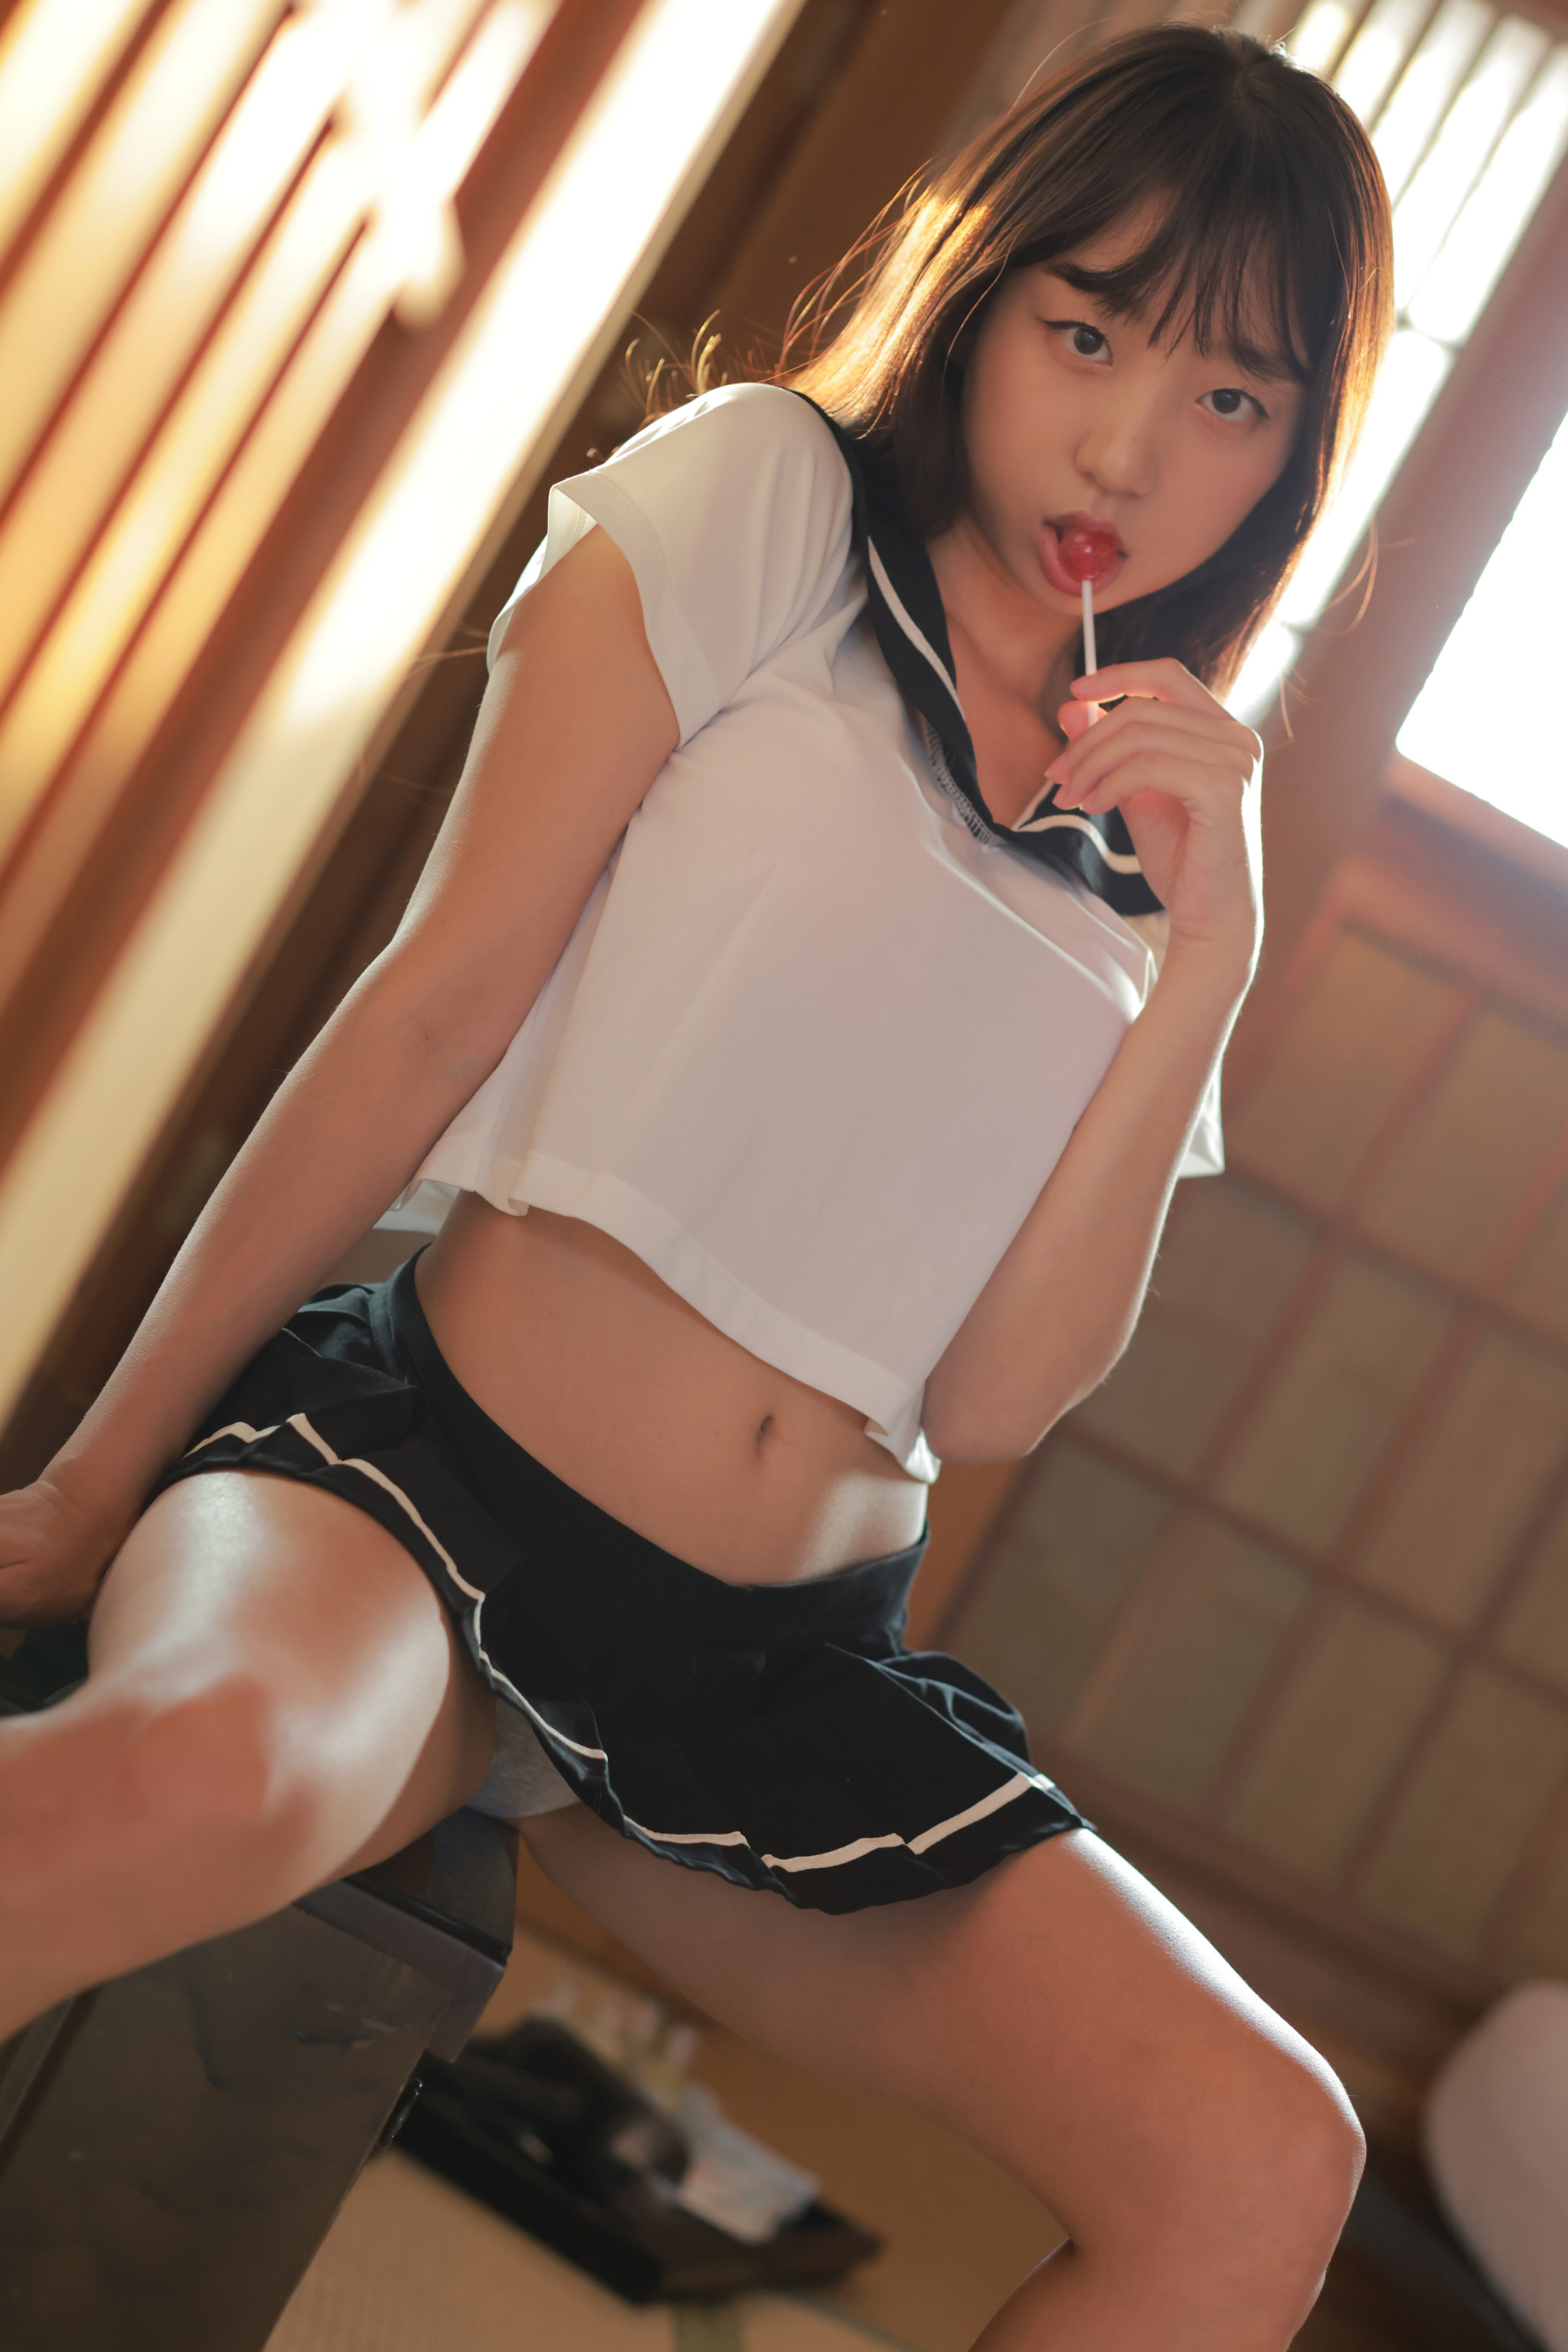 Asian panties skirt